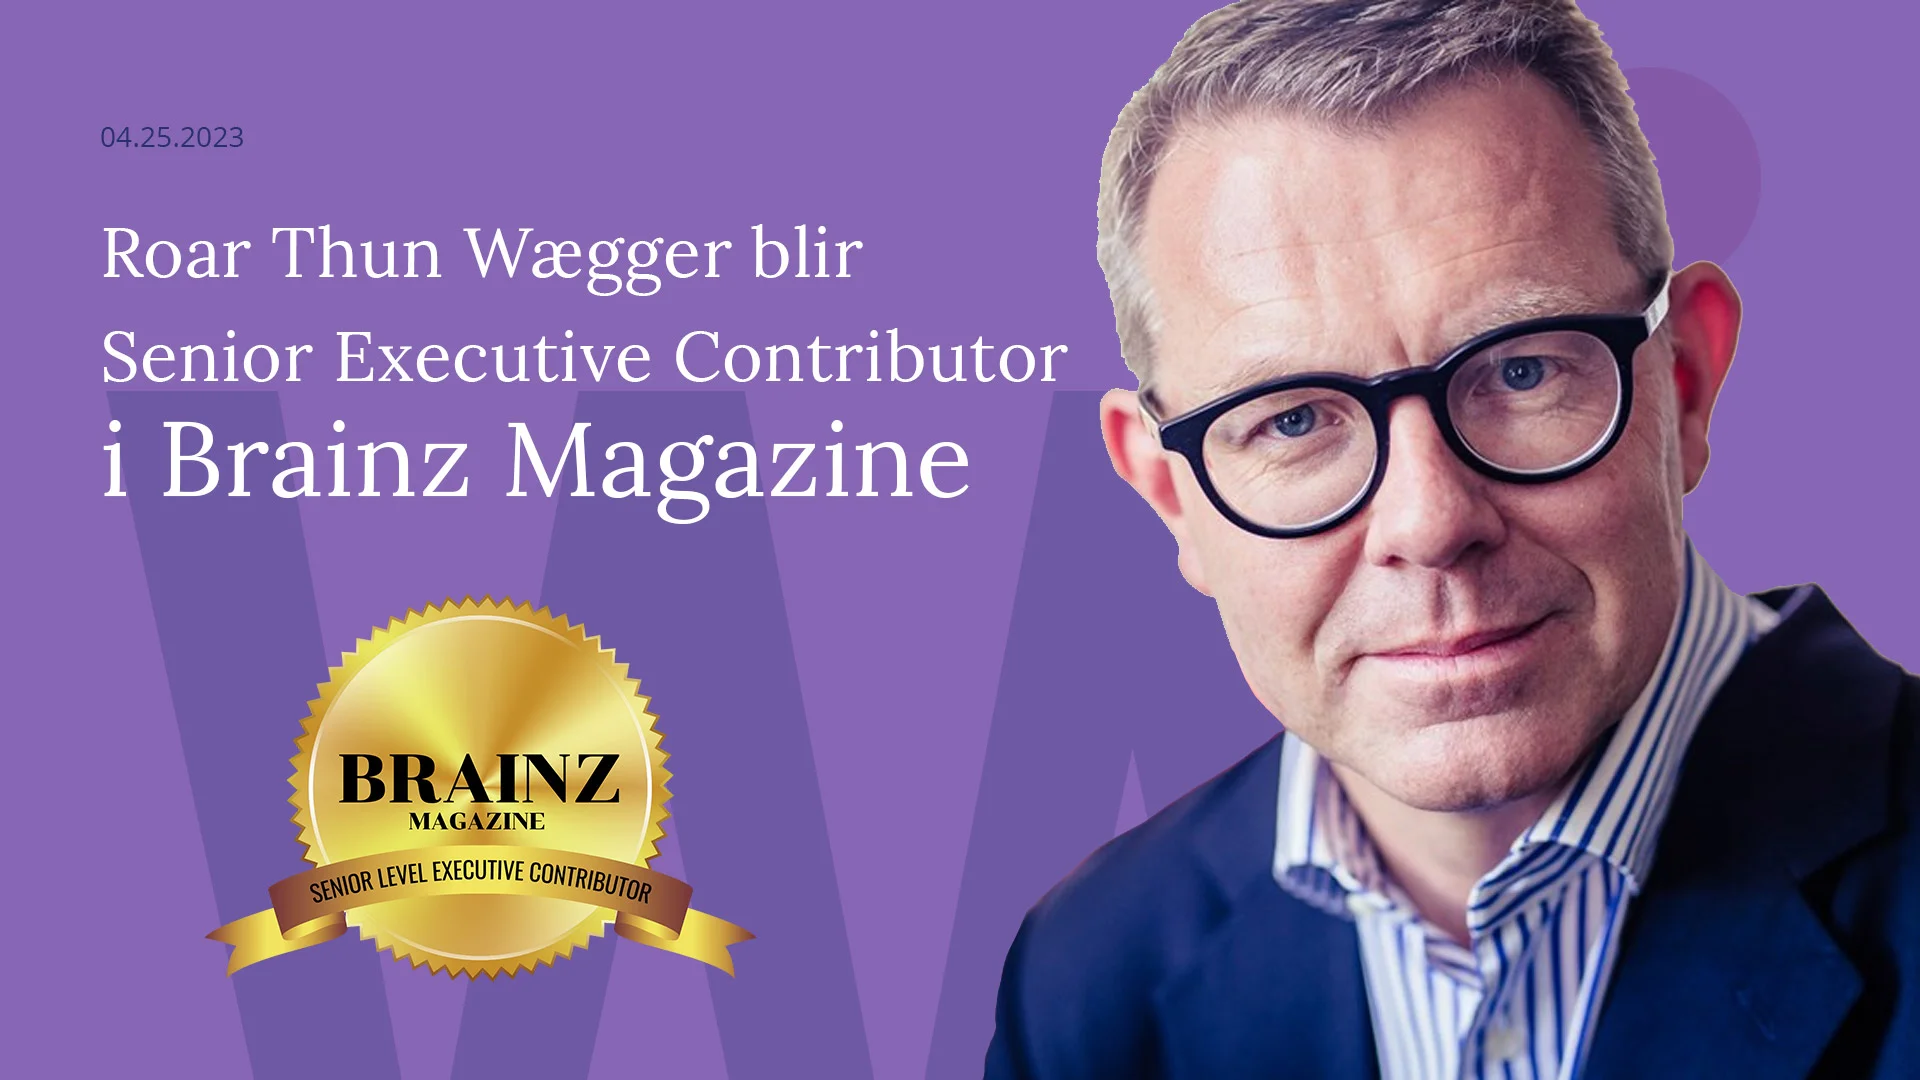 Forhandlingseksperten Roar Thun Wægger blir Senior Executive Contributor hos Brainz Magazine!